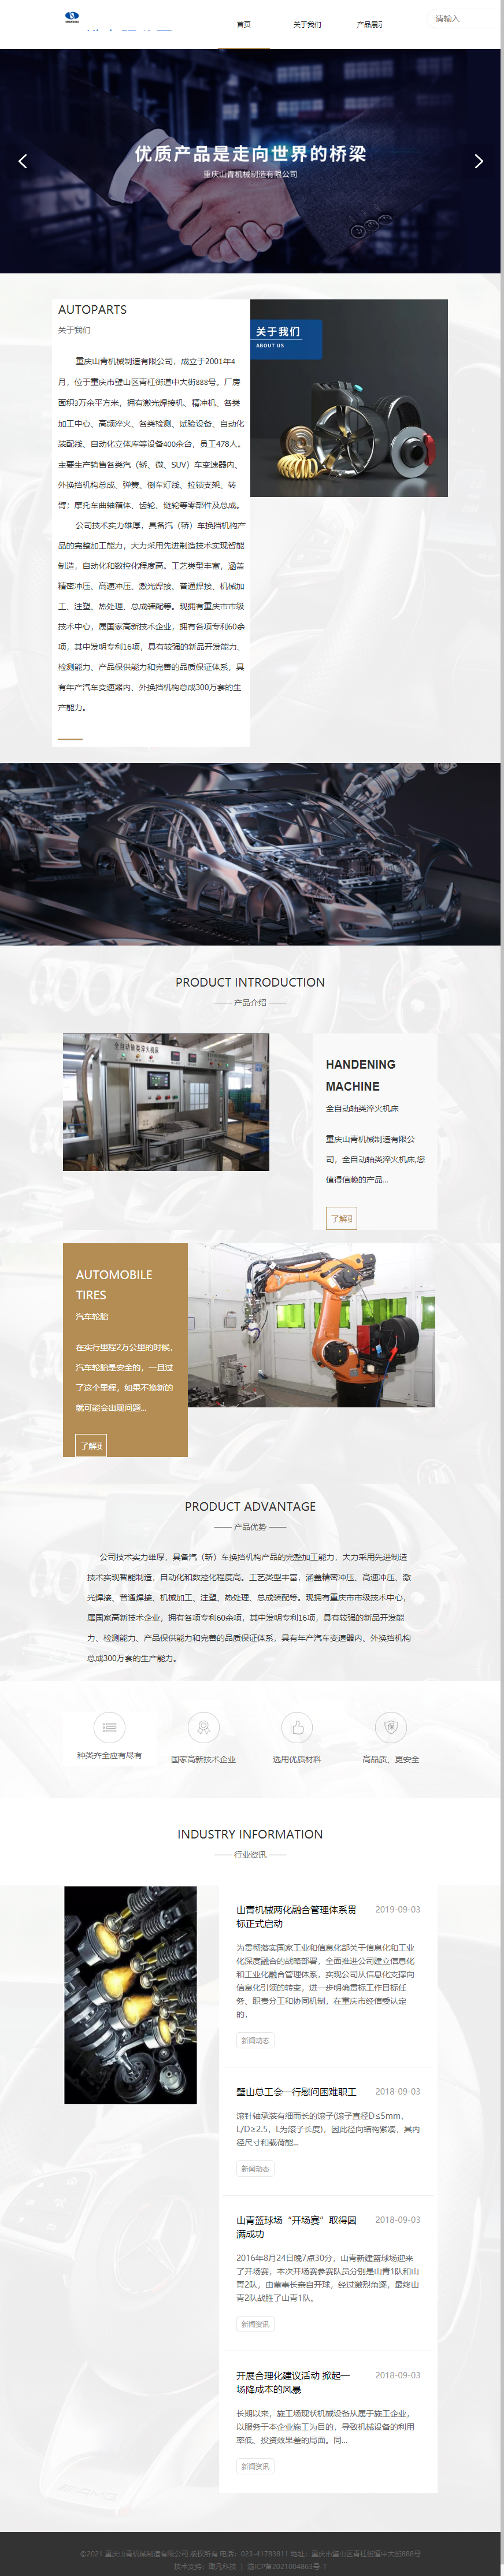 重庆山青机械制造有限公司网站案例